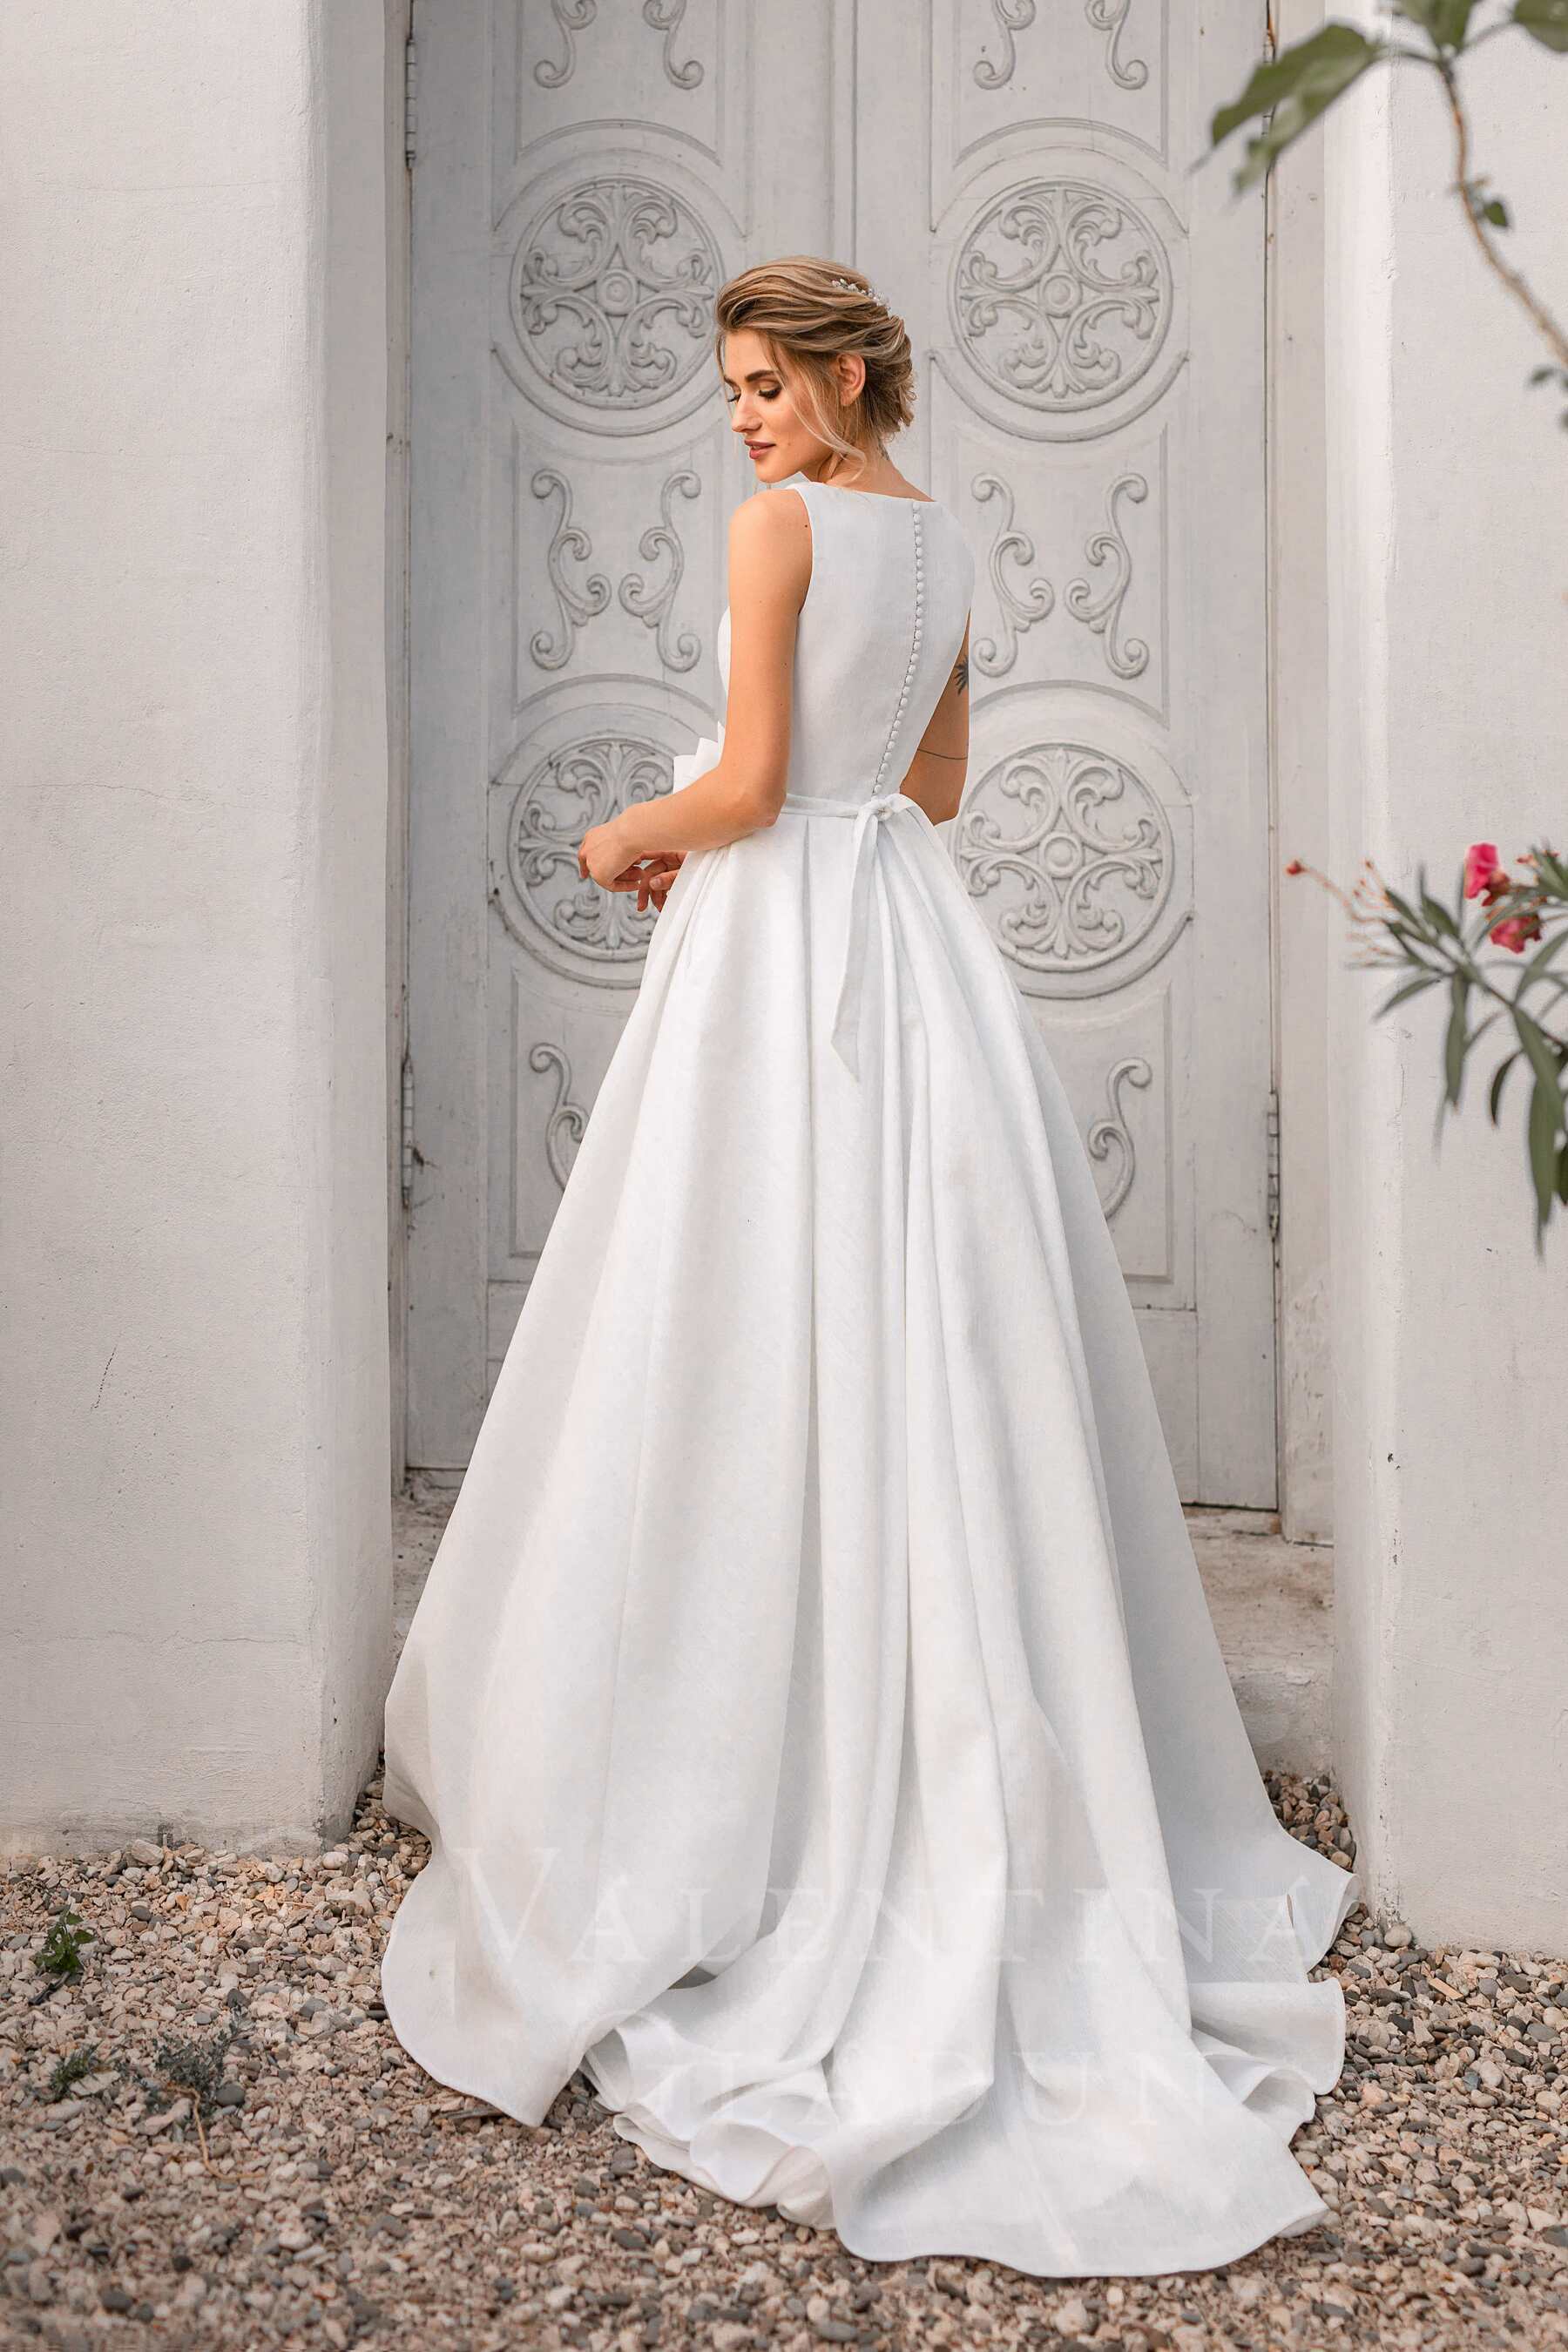 Платье свадебное со шлейфом и глубоким декольте Sorrento от Гладун 2020-2021